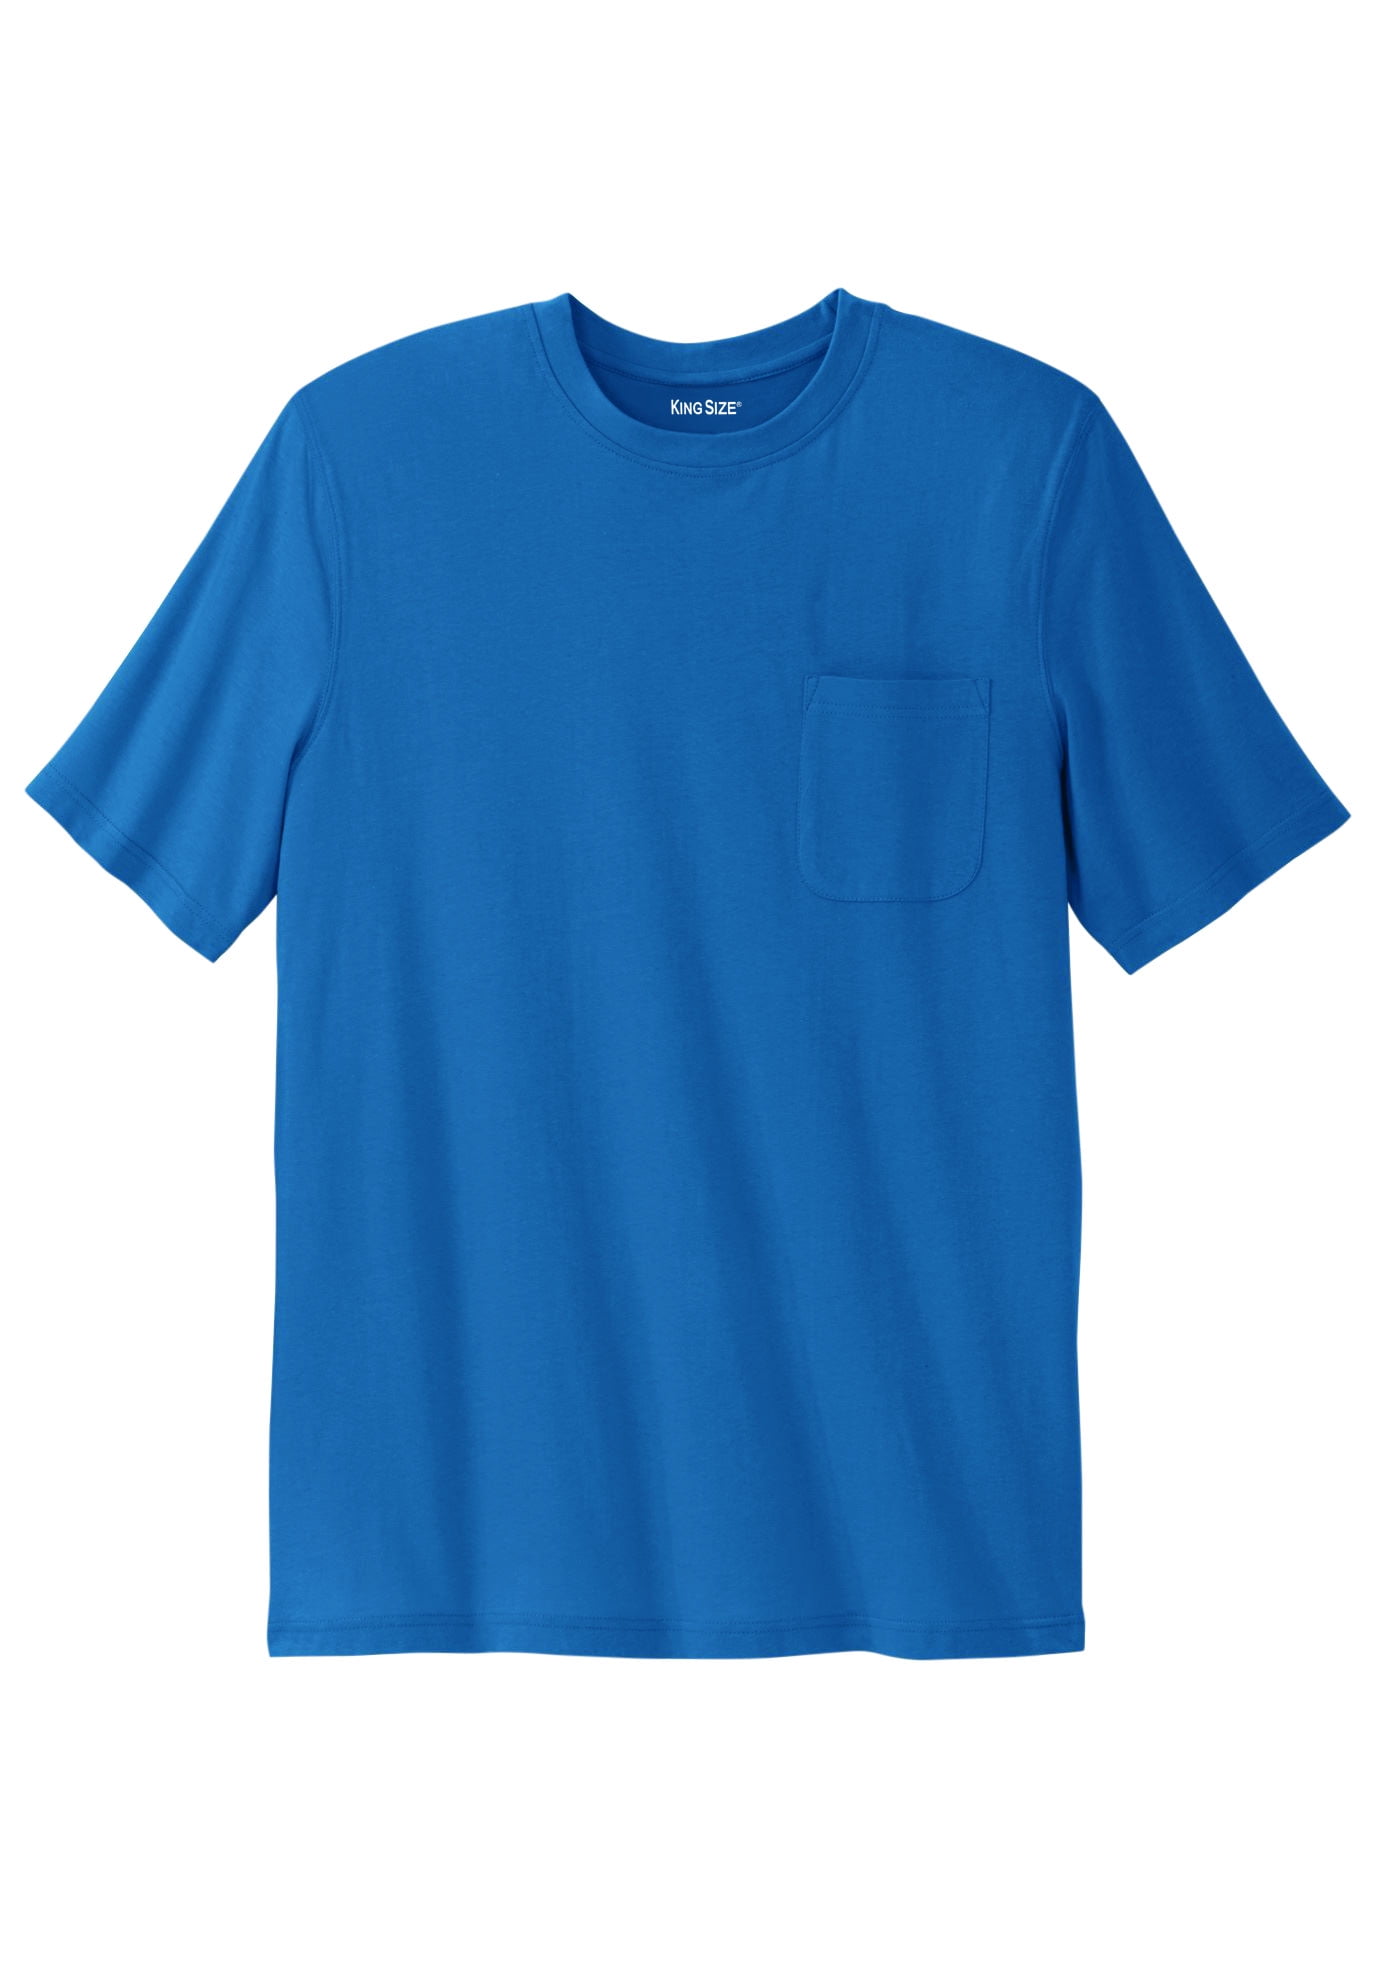 KingSize Men's Big & Tall Shrink-Less™ Lightweight Crewneck T-Shirt